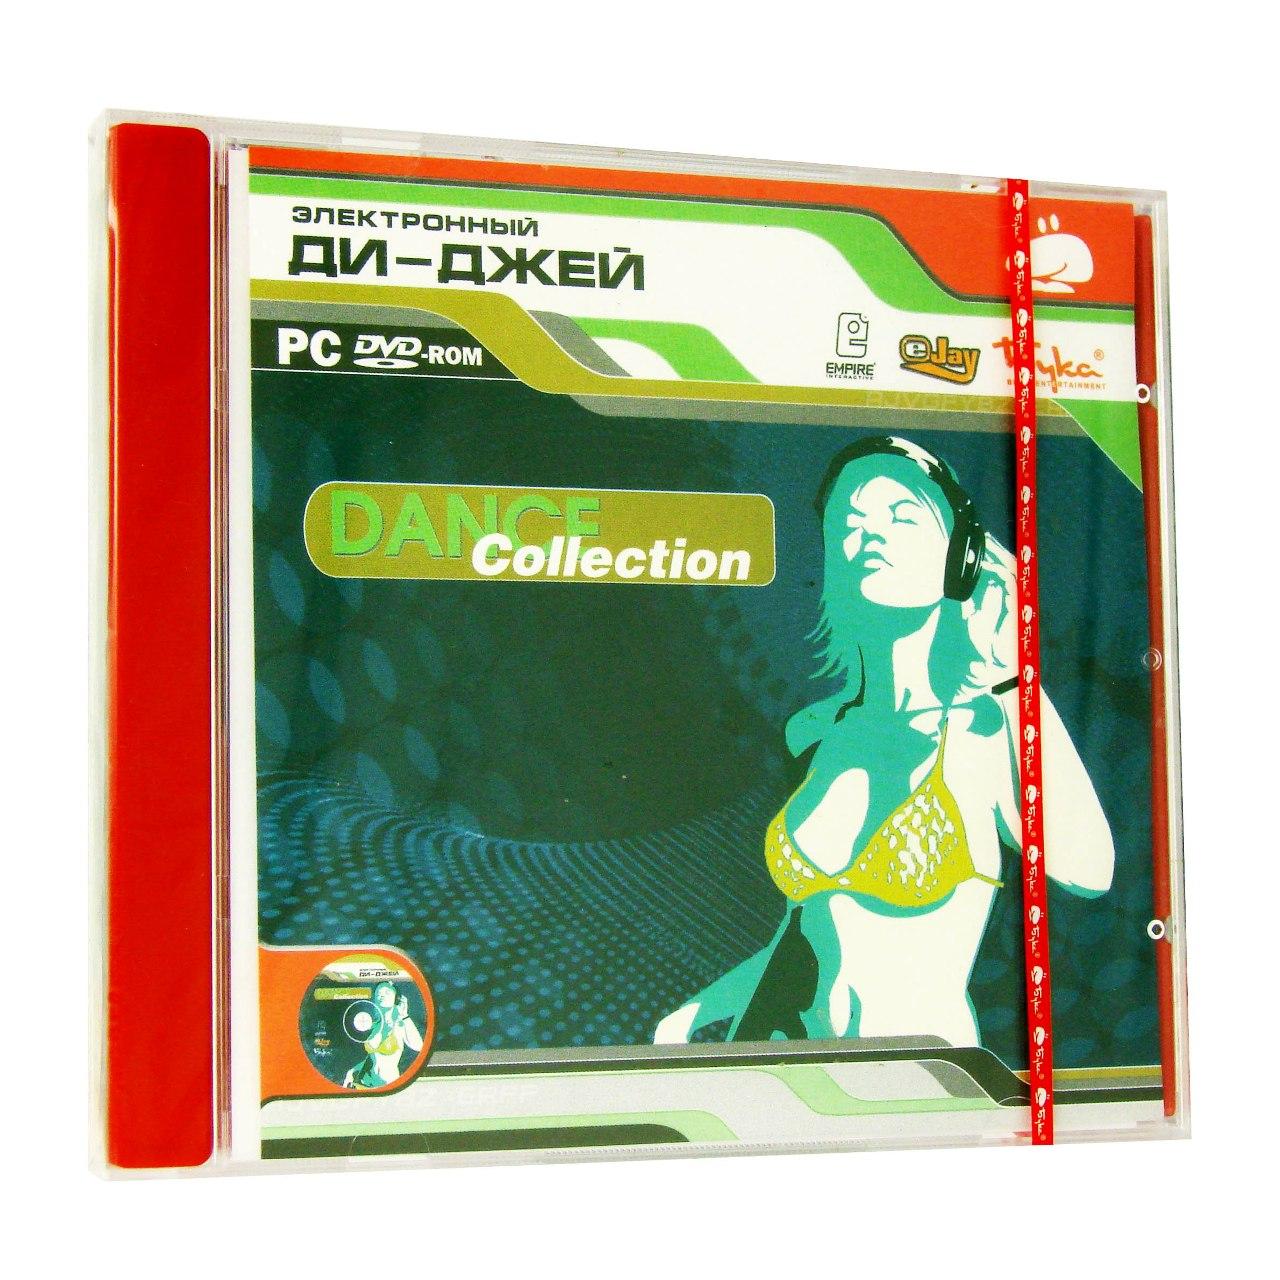 Компьютерный компакт-диск Электронный Ди Джей:Dance Collection (PC), фирма "Бука", 1DVD